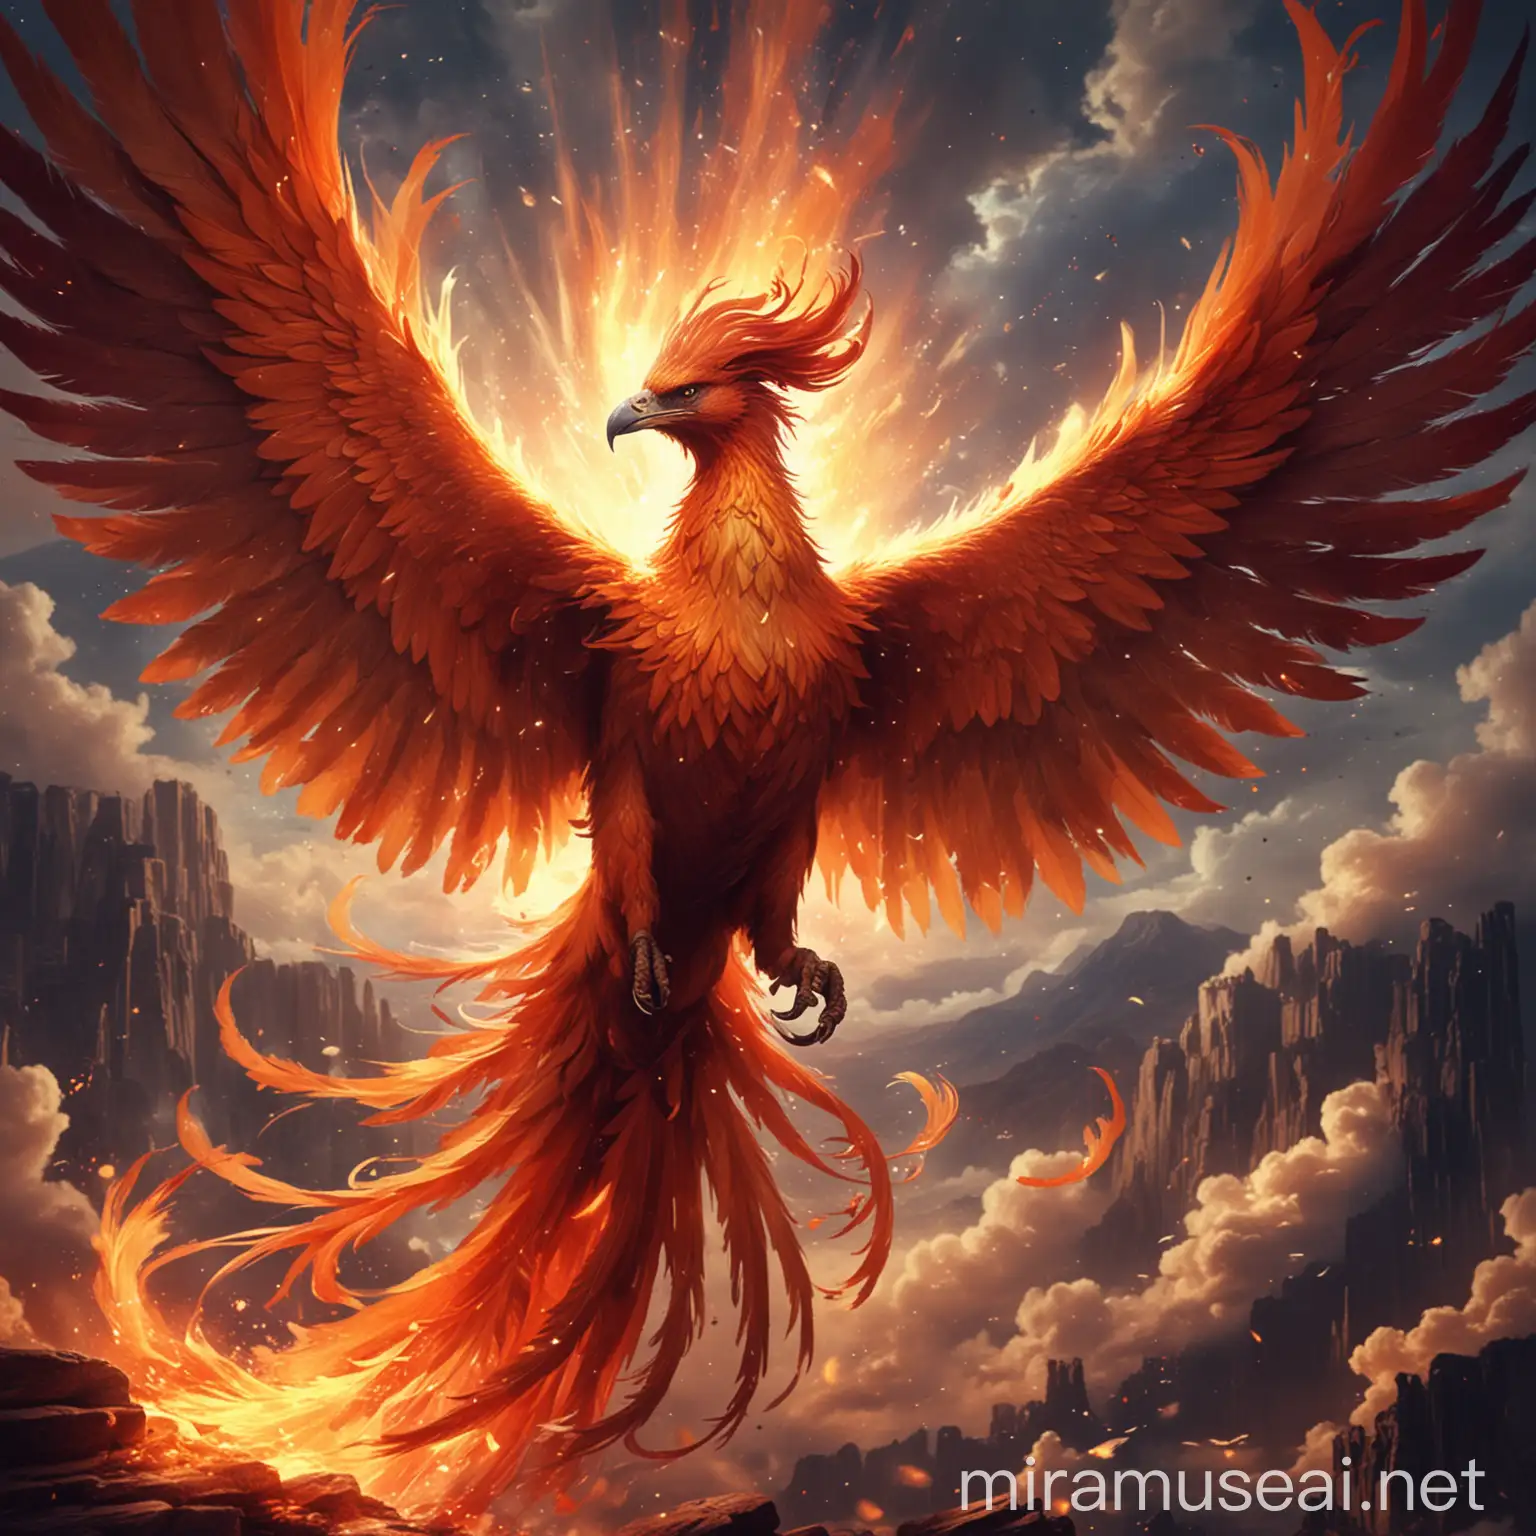 Magnificent Phoenix Soaring in Fiery Sky